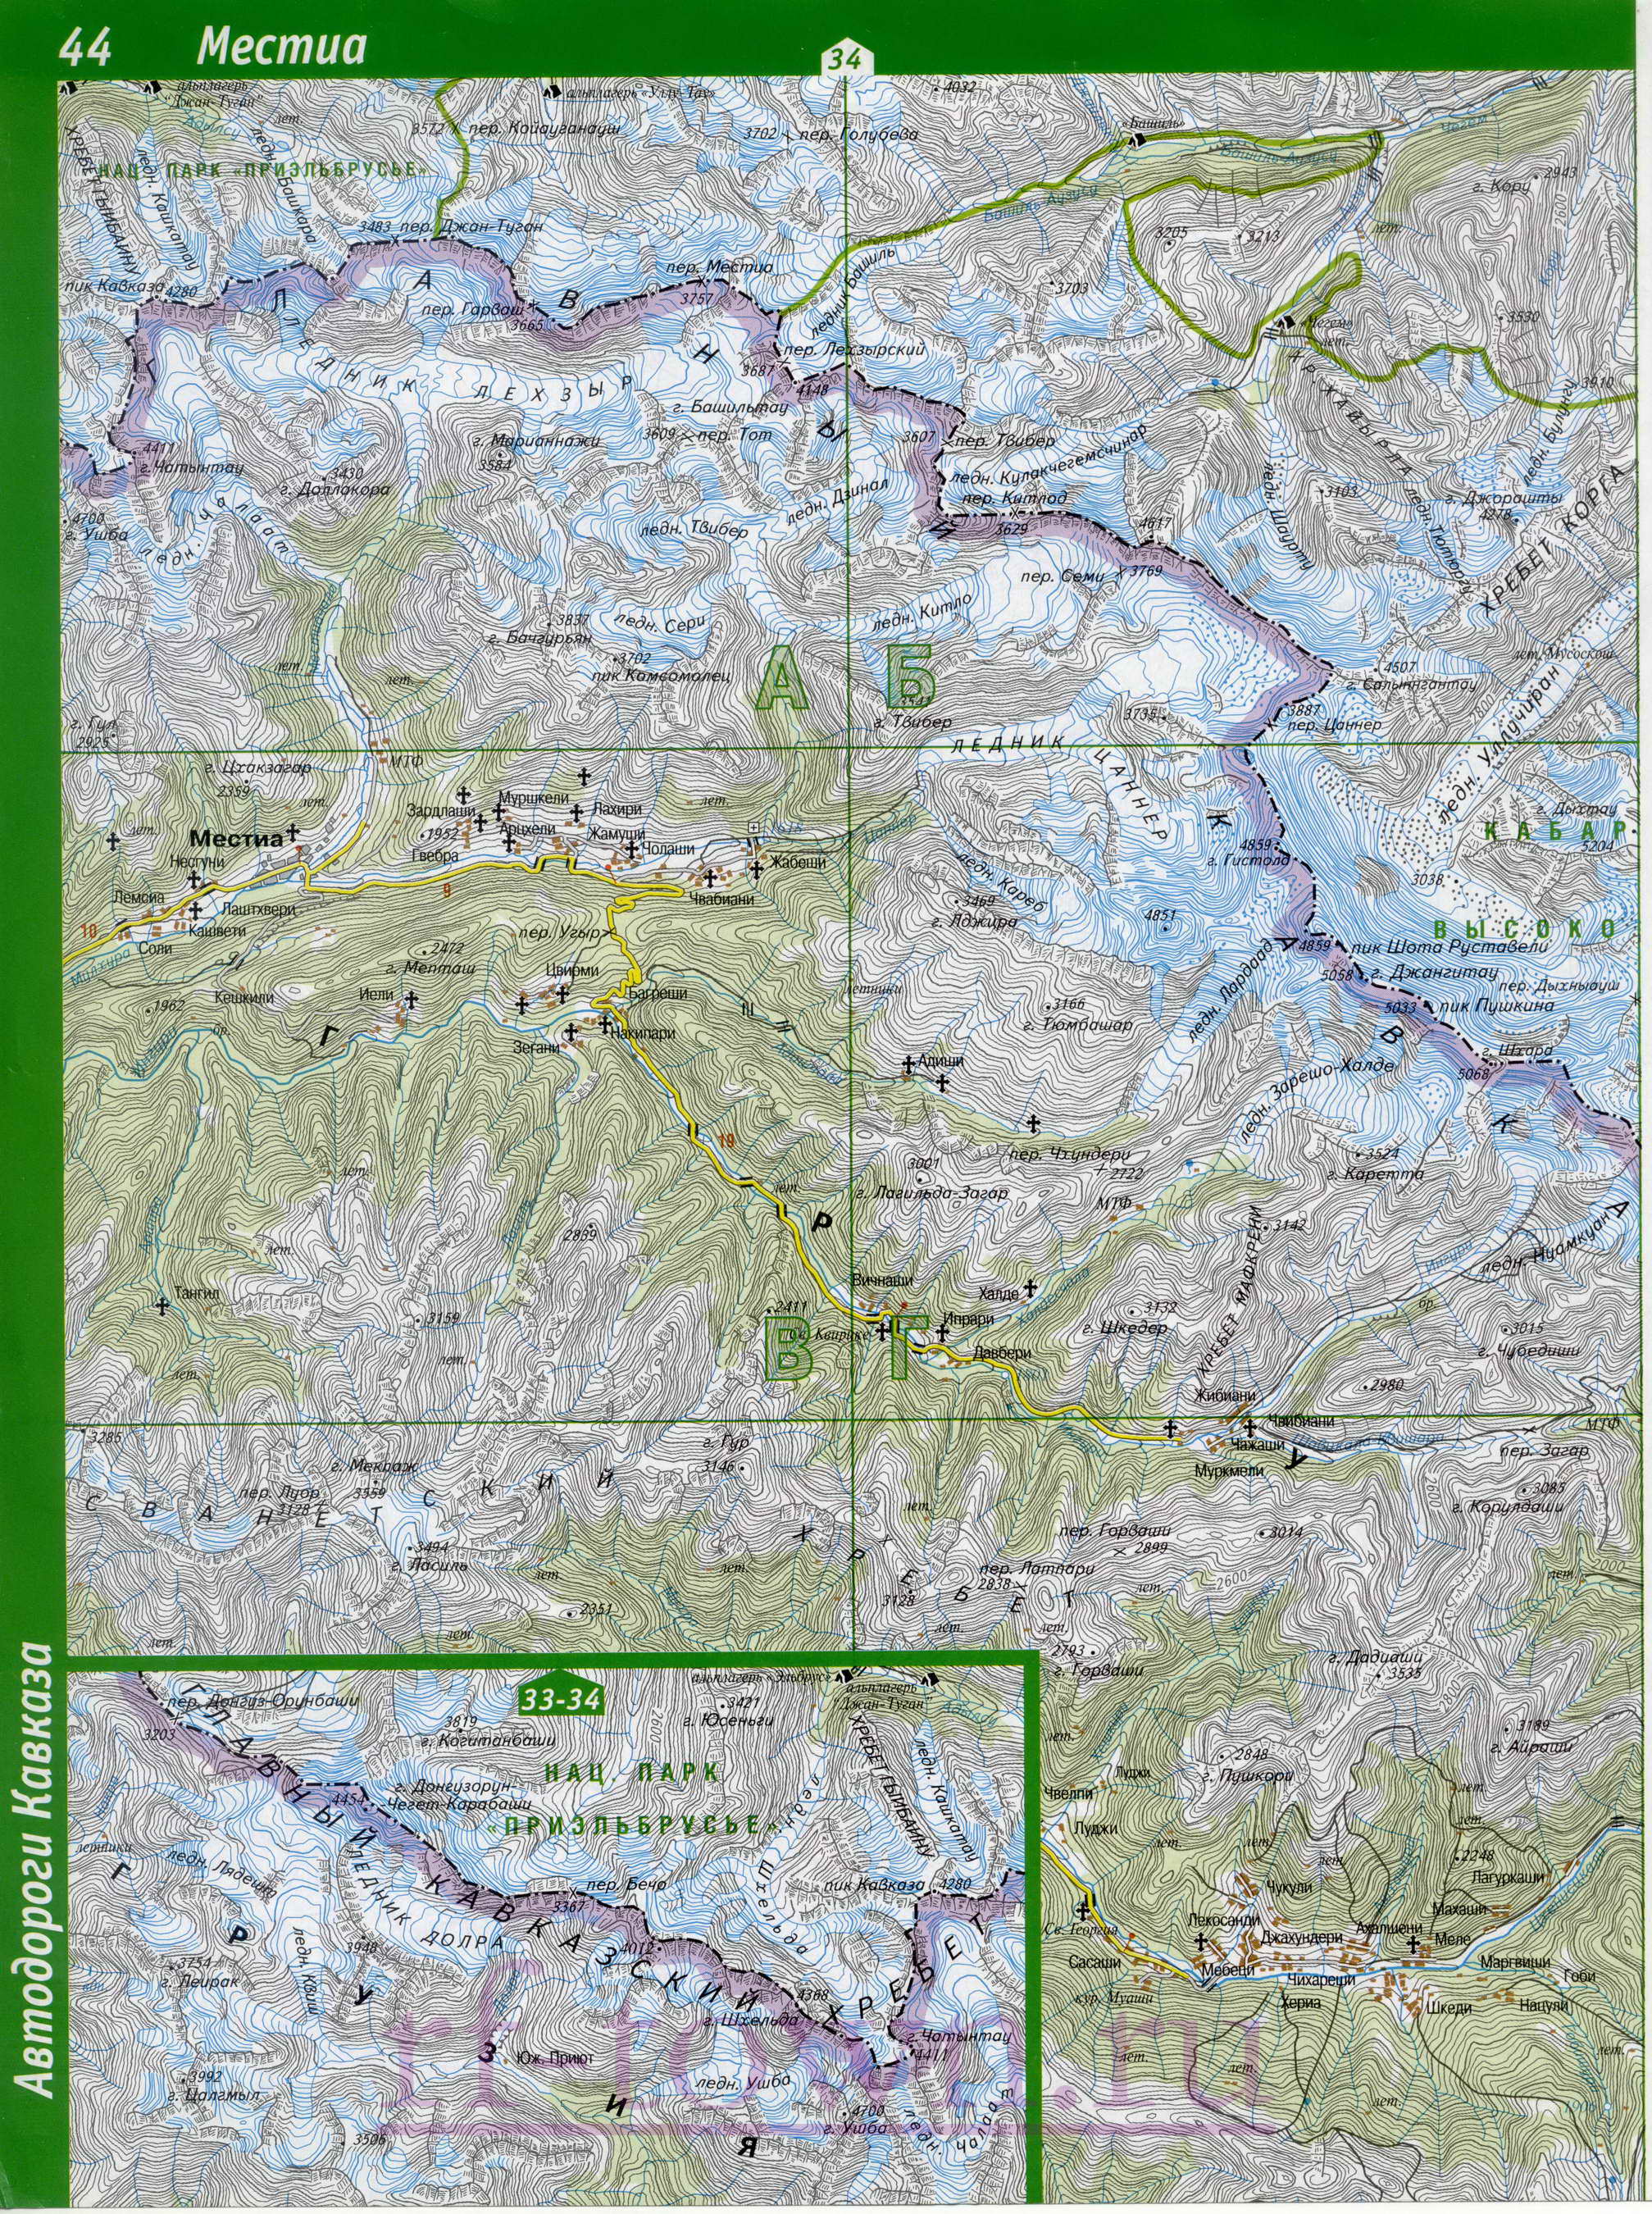 Карта Эльбрусского района Кабардино-Балкарии. Эльбрусский район топографическая карта масштаба 1см:2км, B1 - 